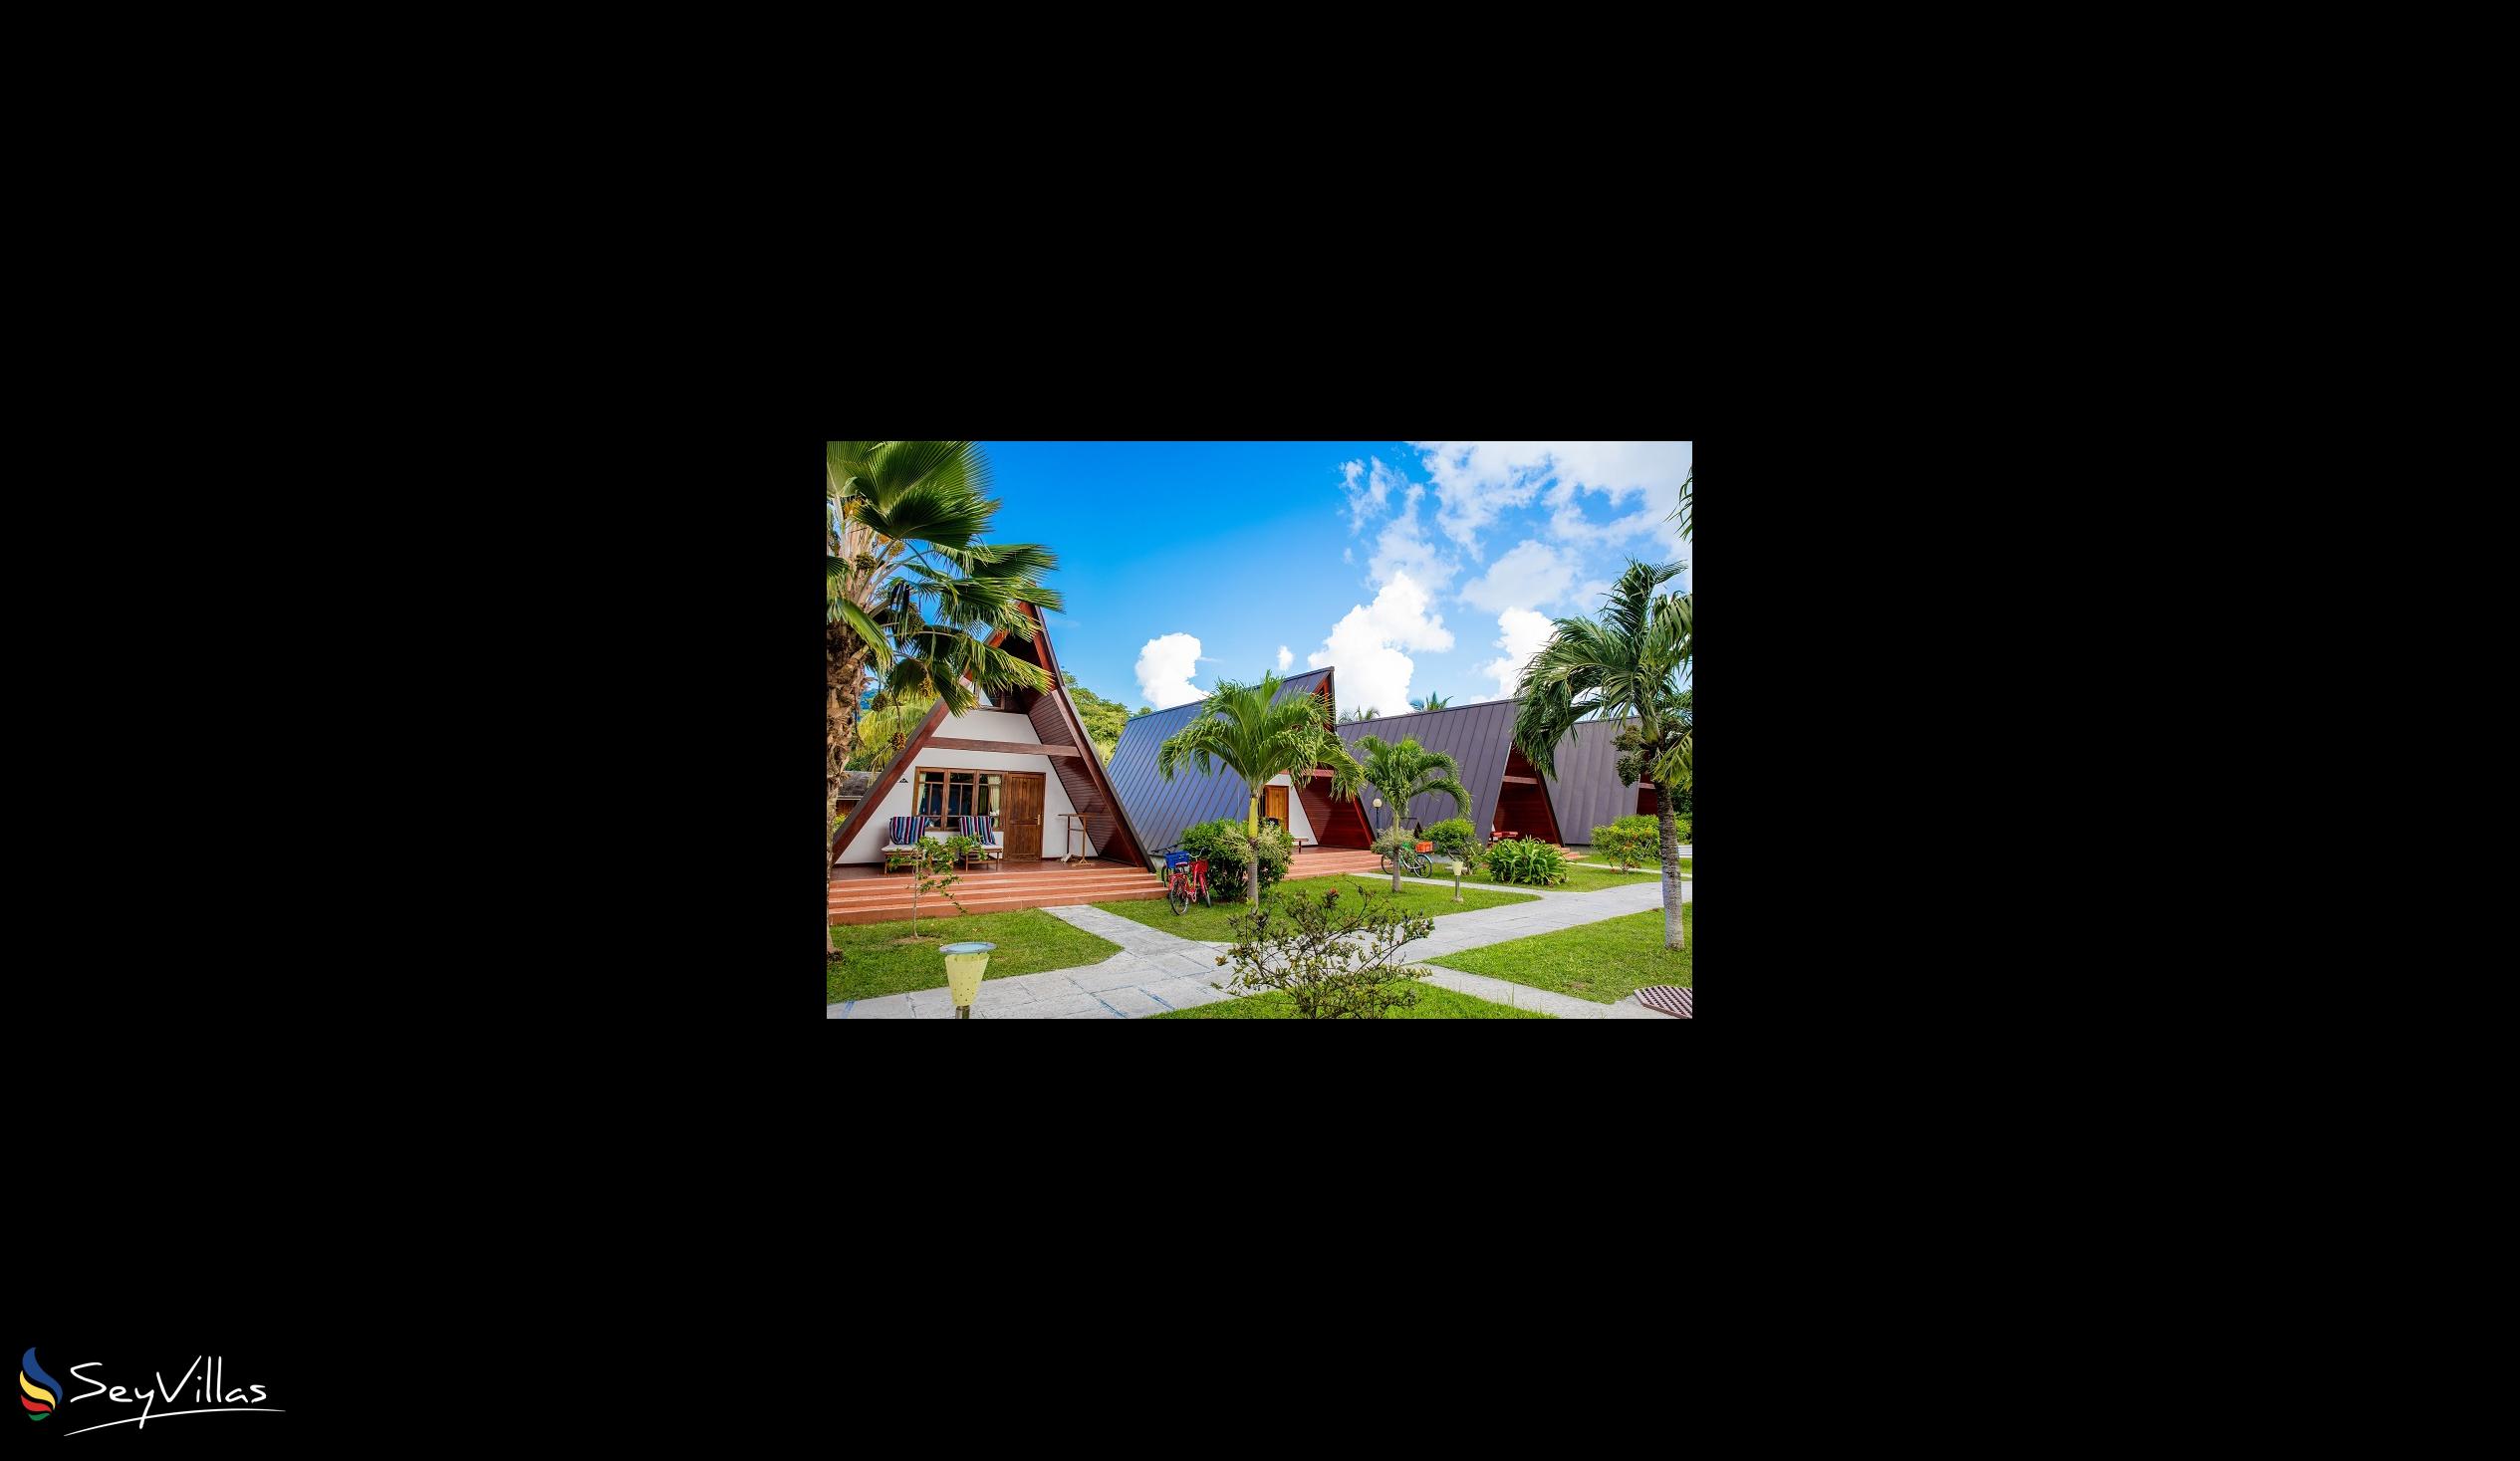 Photo 15: La Digue Island Lodge - Outdoor area - La Digue (Seychelles)